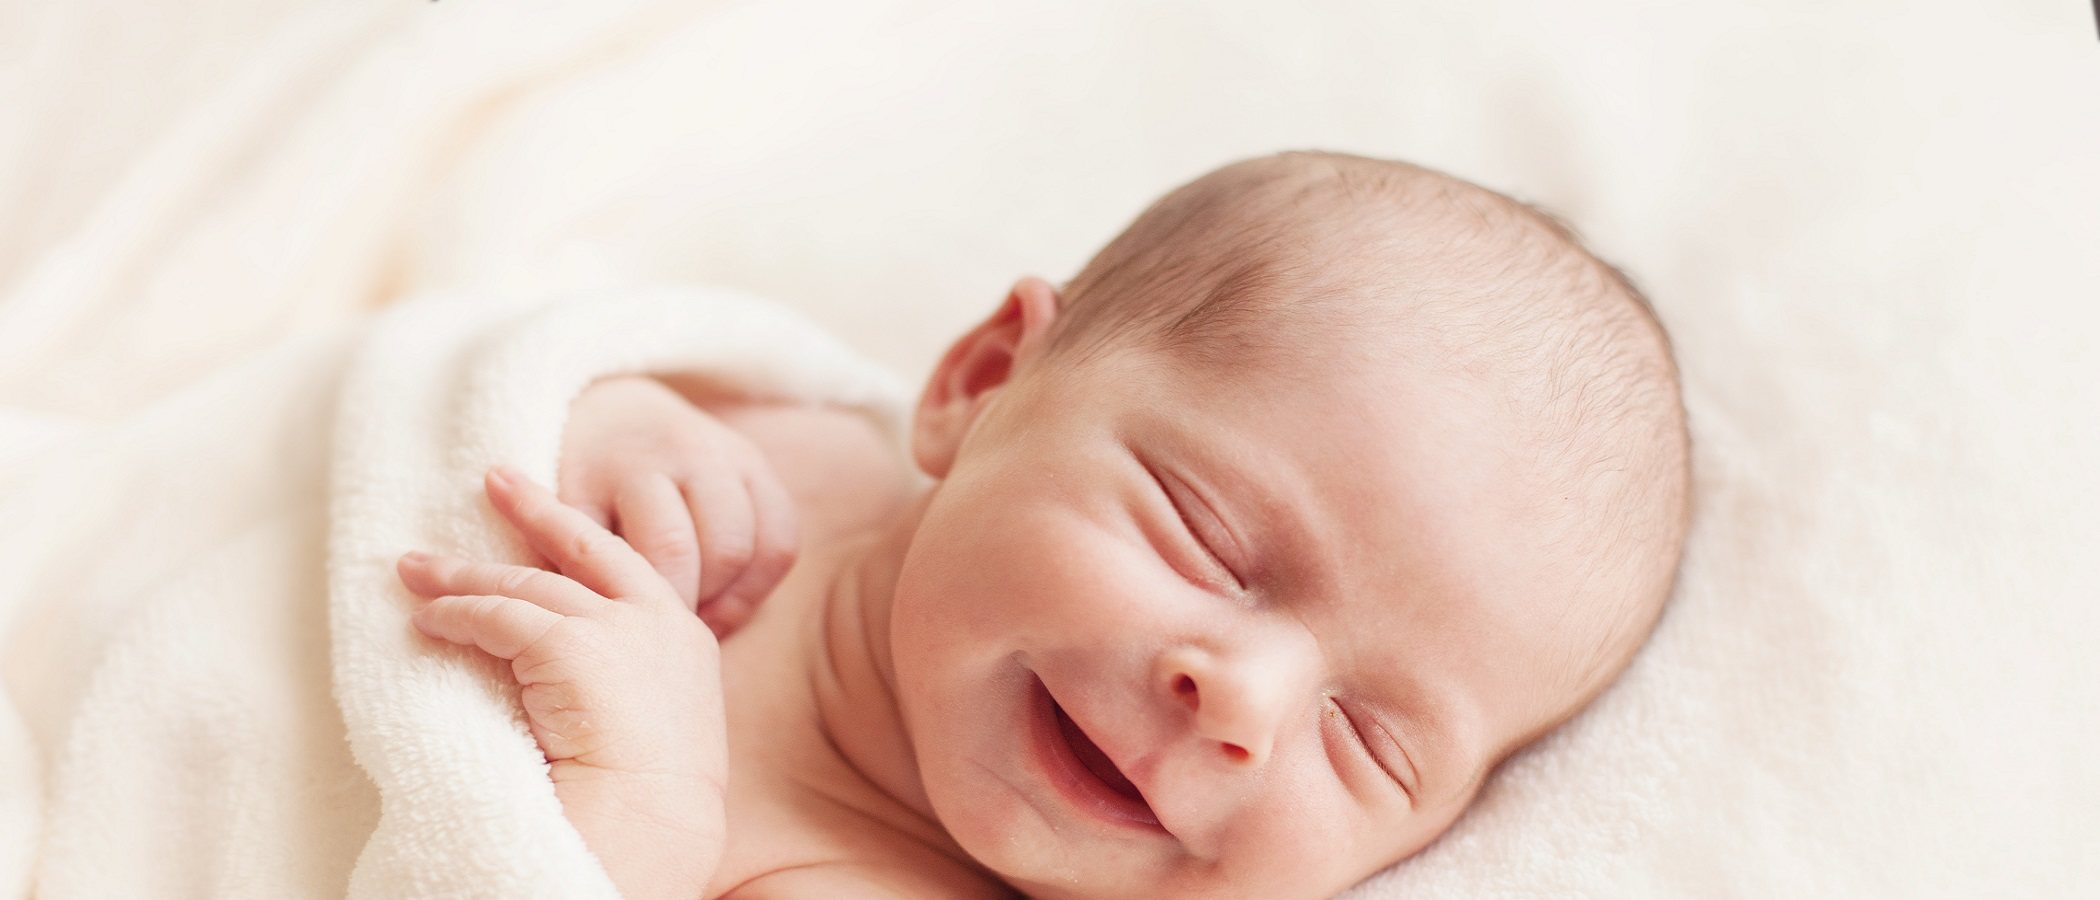 Los bebés recién nacidos con coronavirus experimentan síntomas leves